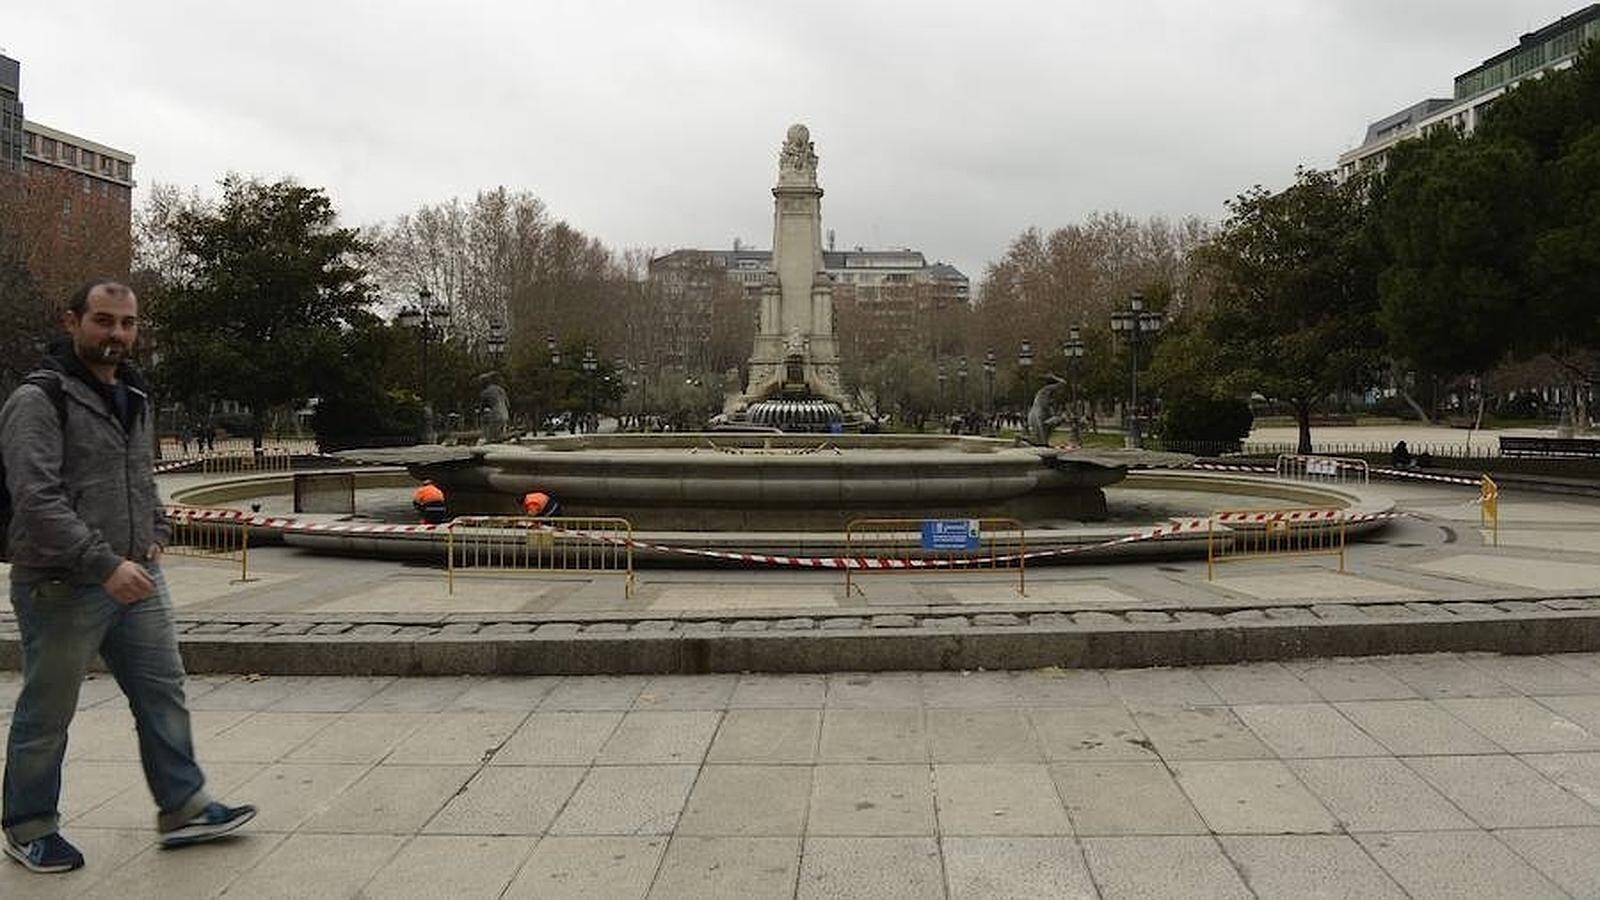 18. Plaza de España